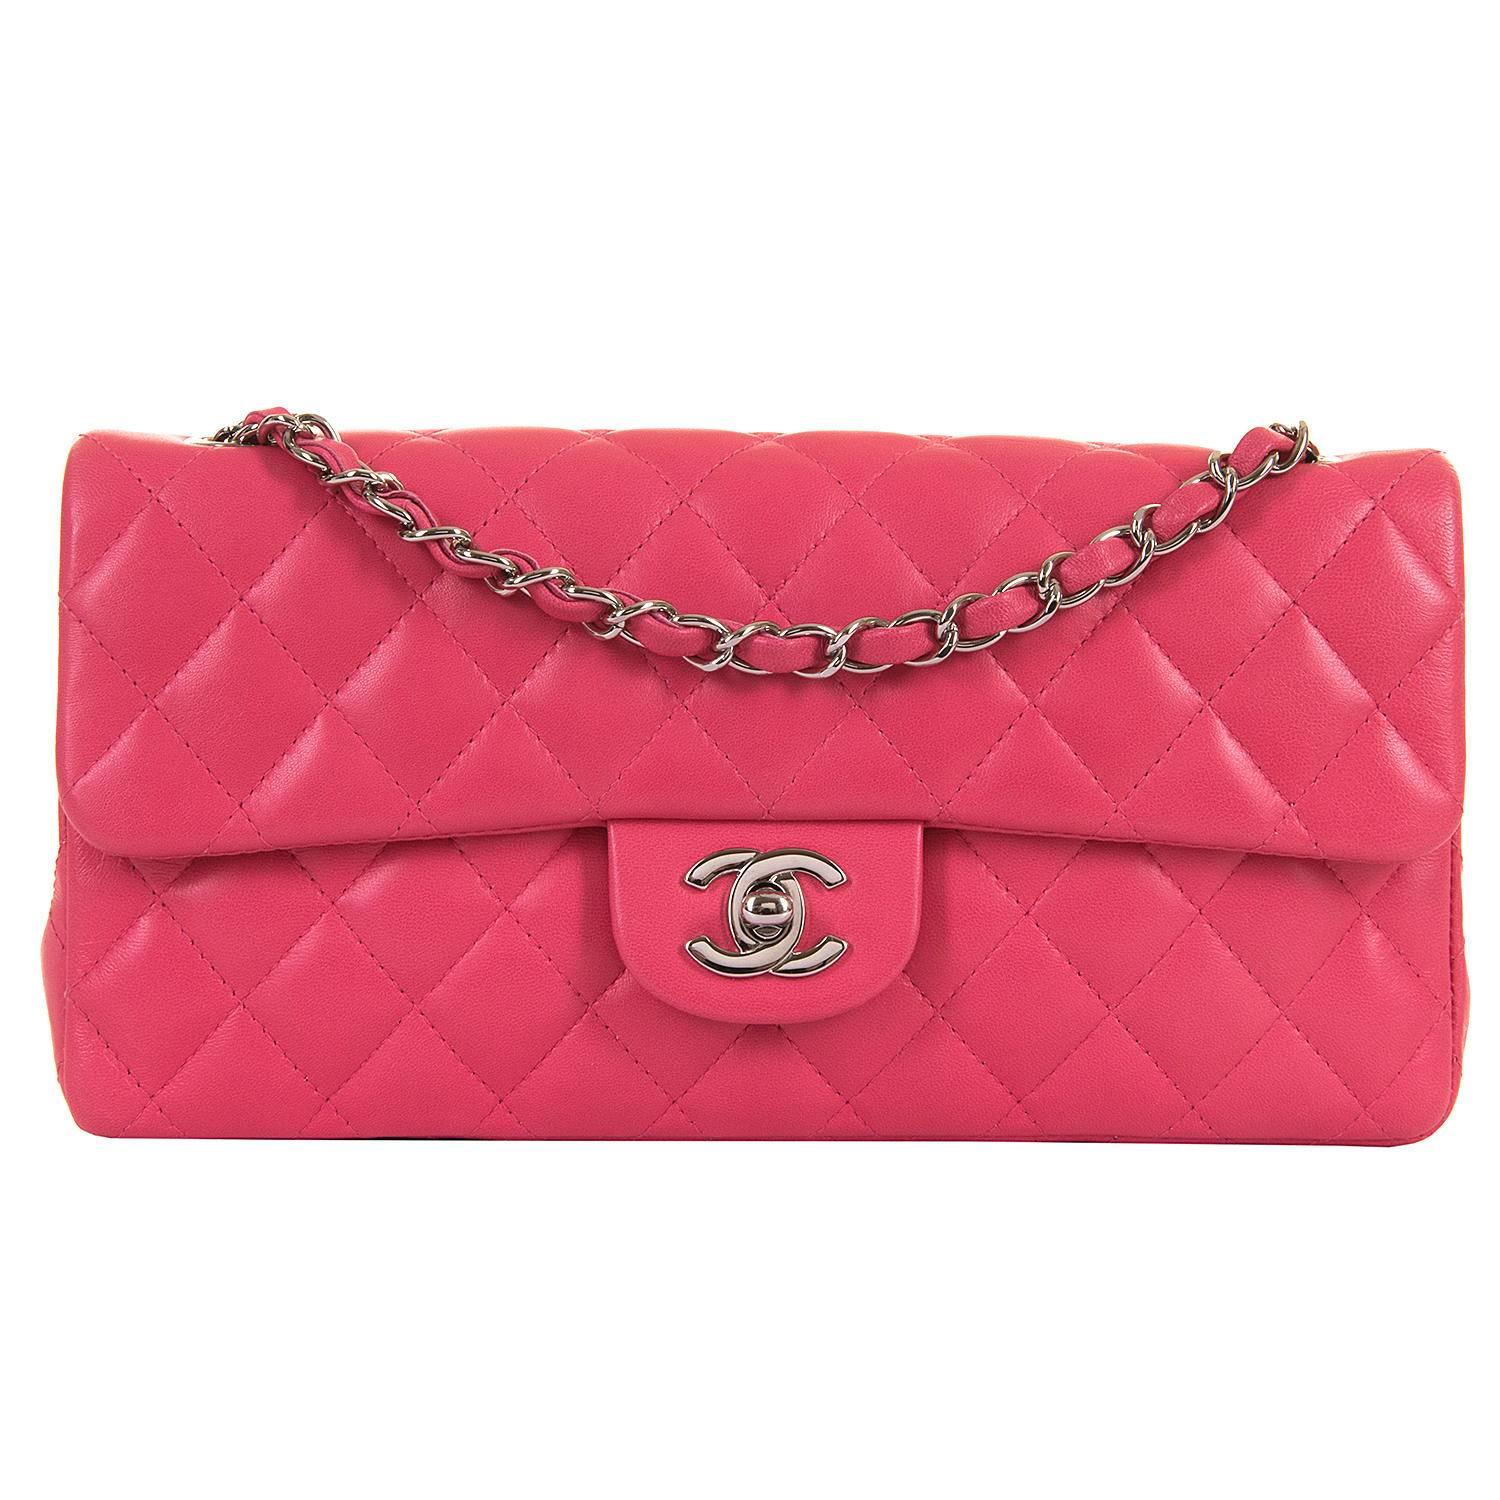 PRISTINE Chanel Rose Pink 25cm Lambskin Medium Flap  Sac 'Timeless' Shoulder Bag For Sale